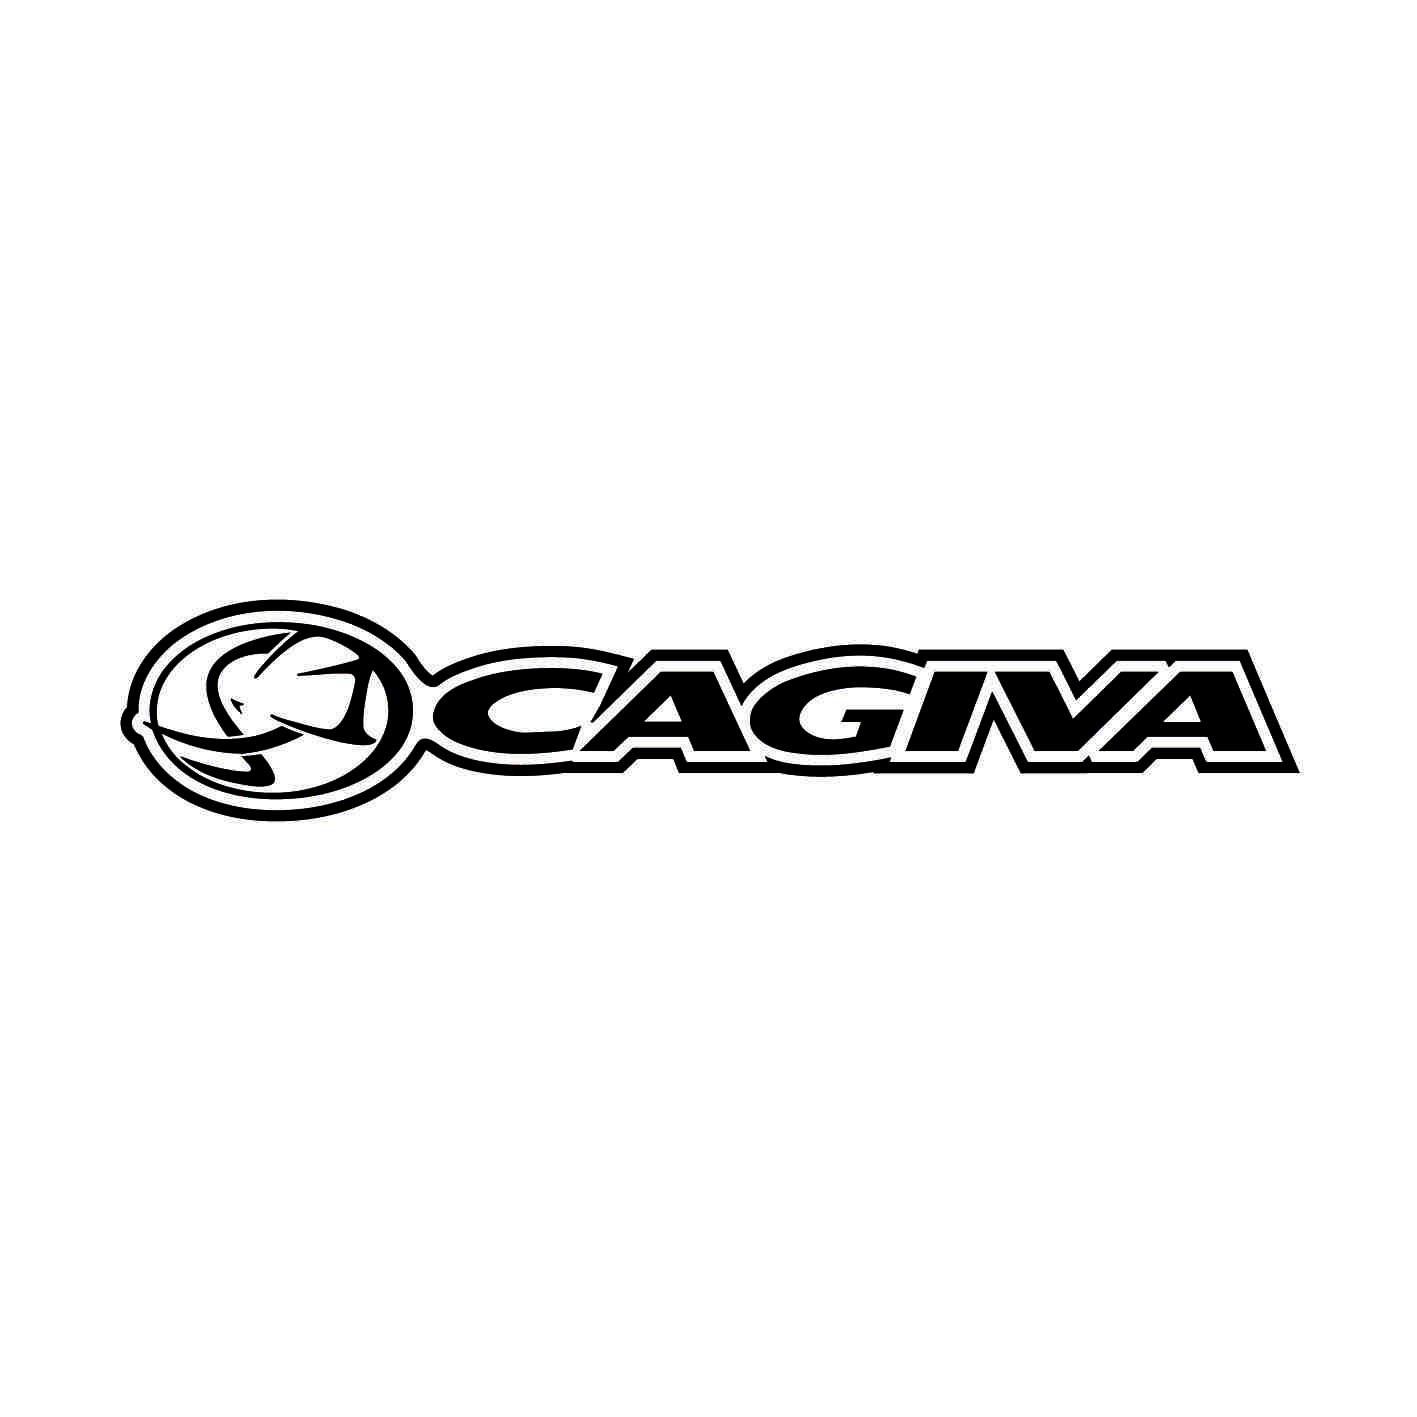 cagiva-ref9-stickers-moto-casque-scooter-sticker-autocollant-adhesifs